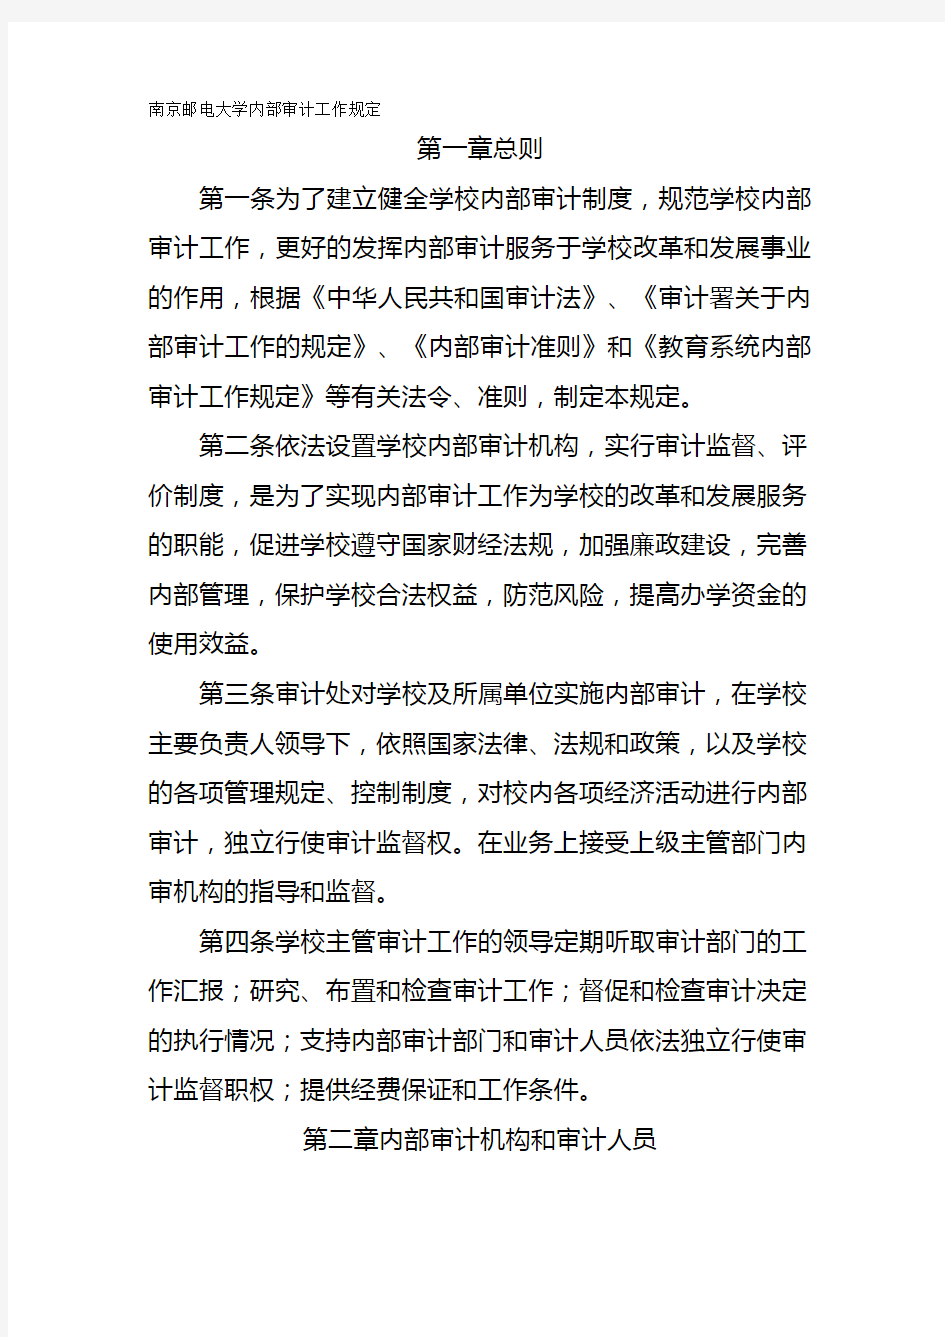 2020年(财务内部审计)南京邮电大学内部审计工作规定